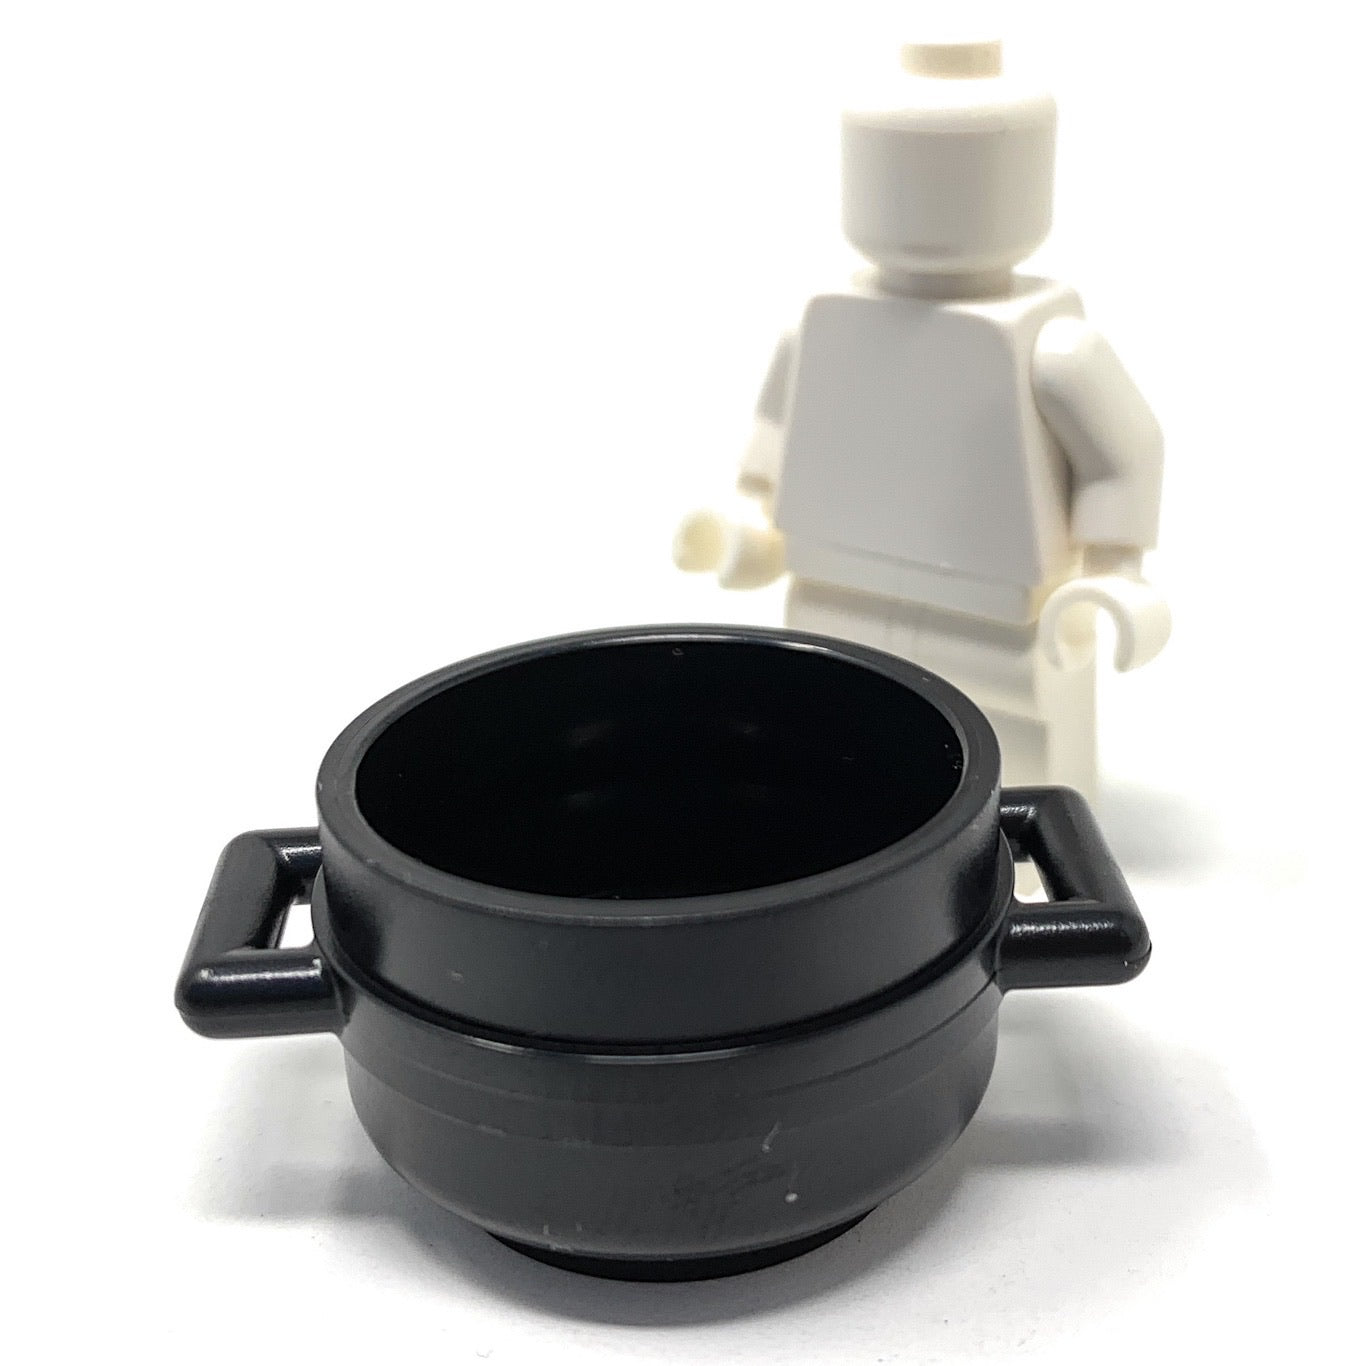 Pot / Cauldron with Handles - Official LEGO® Part